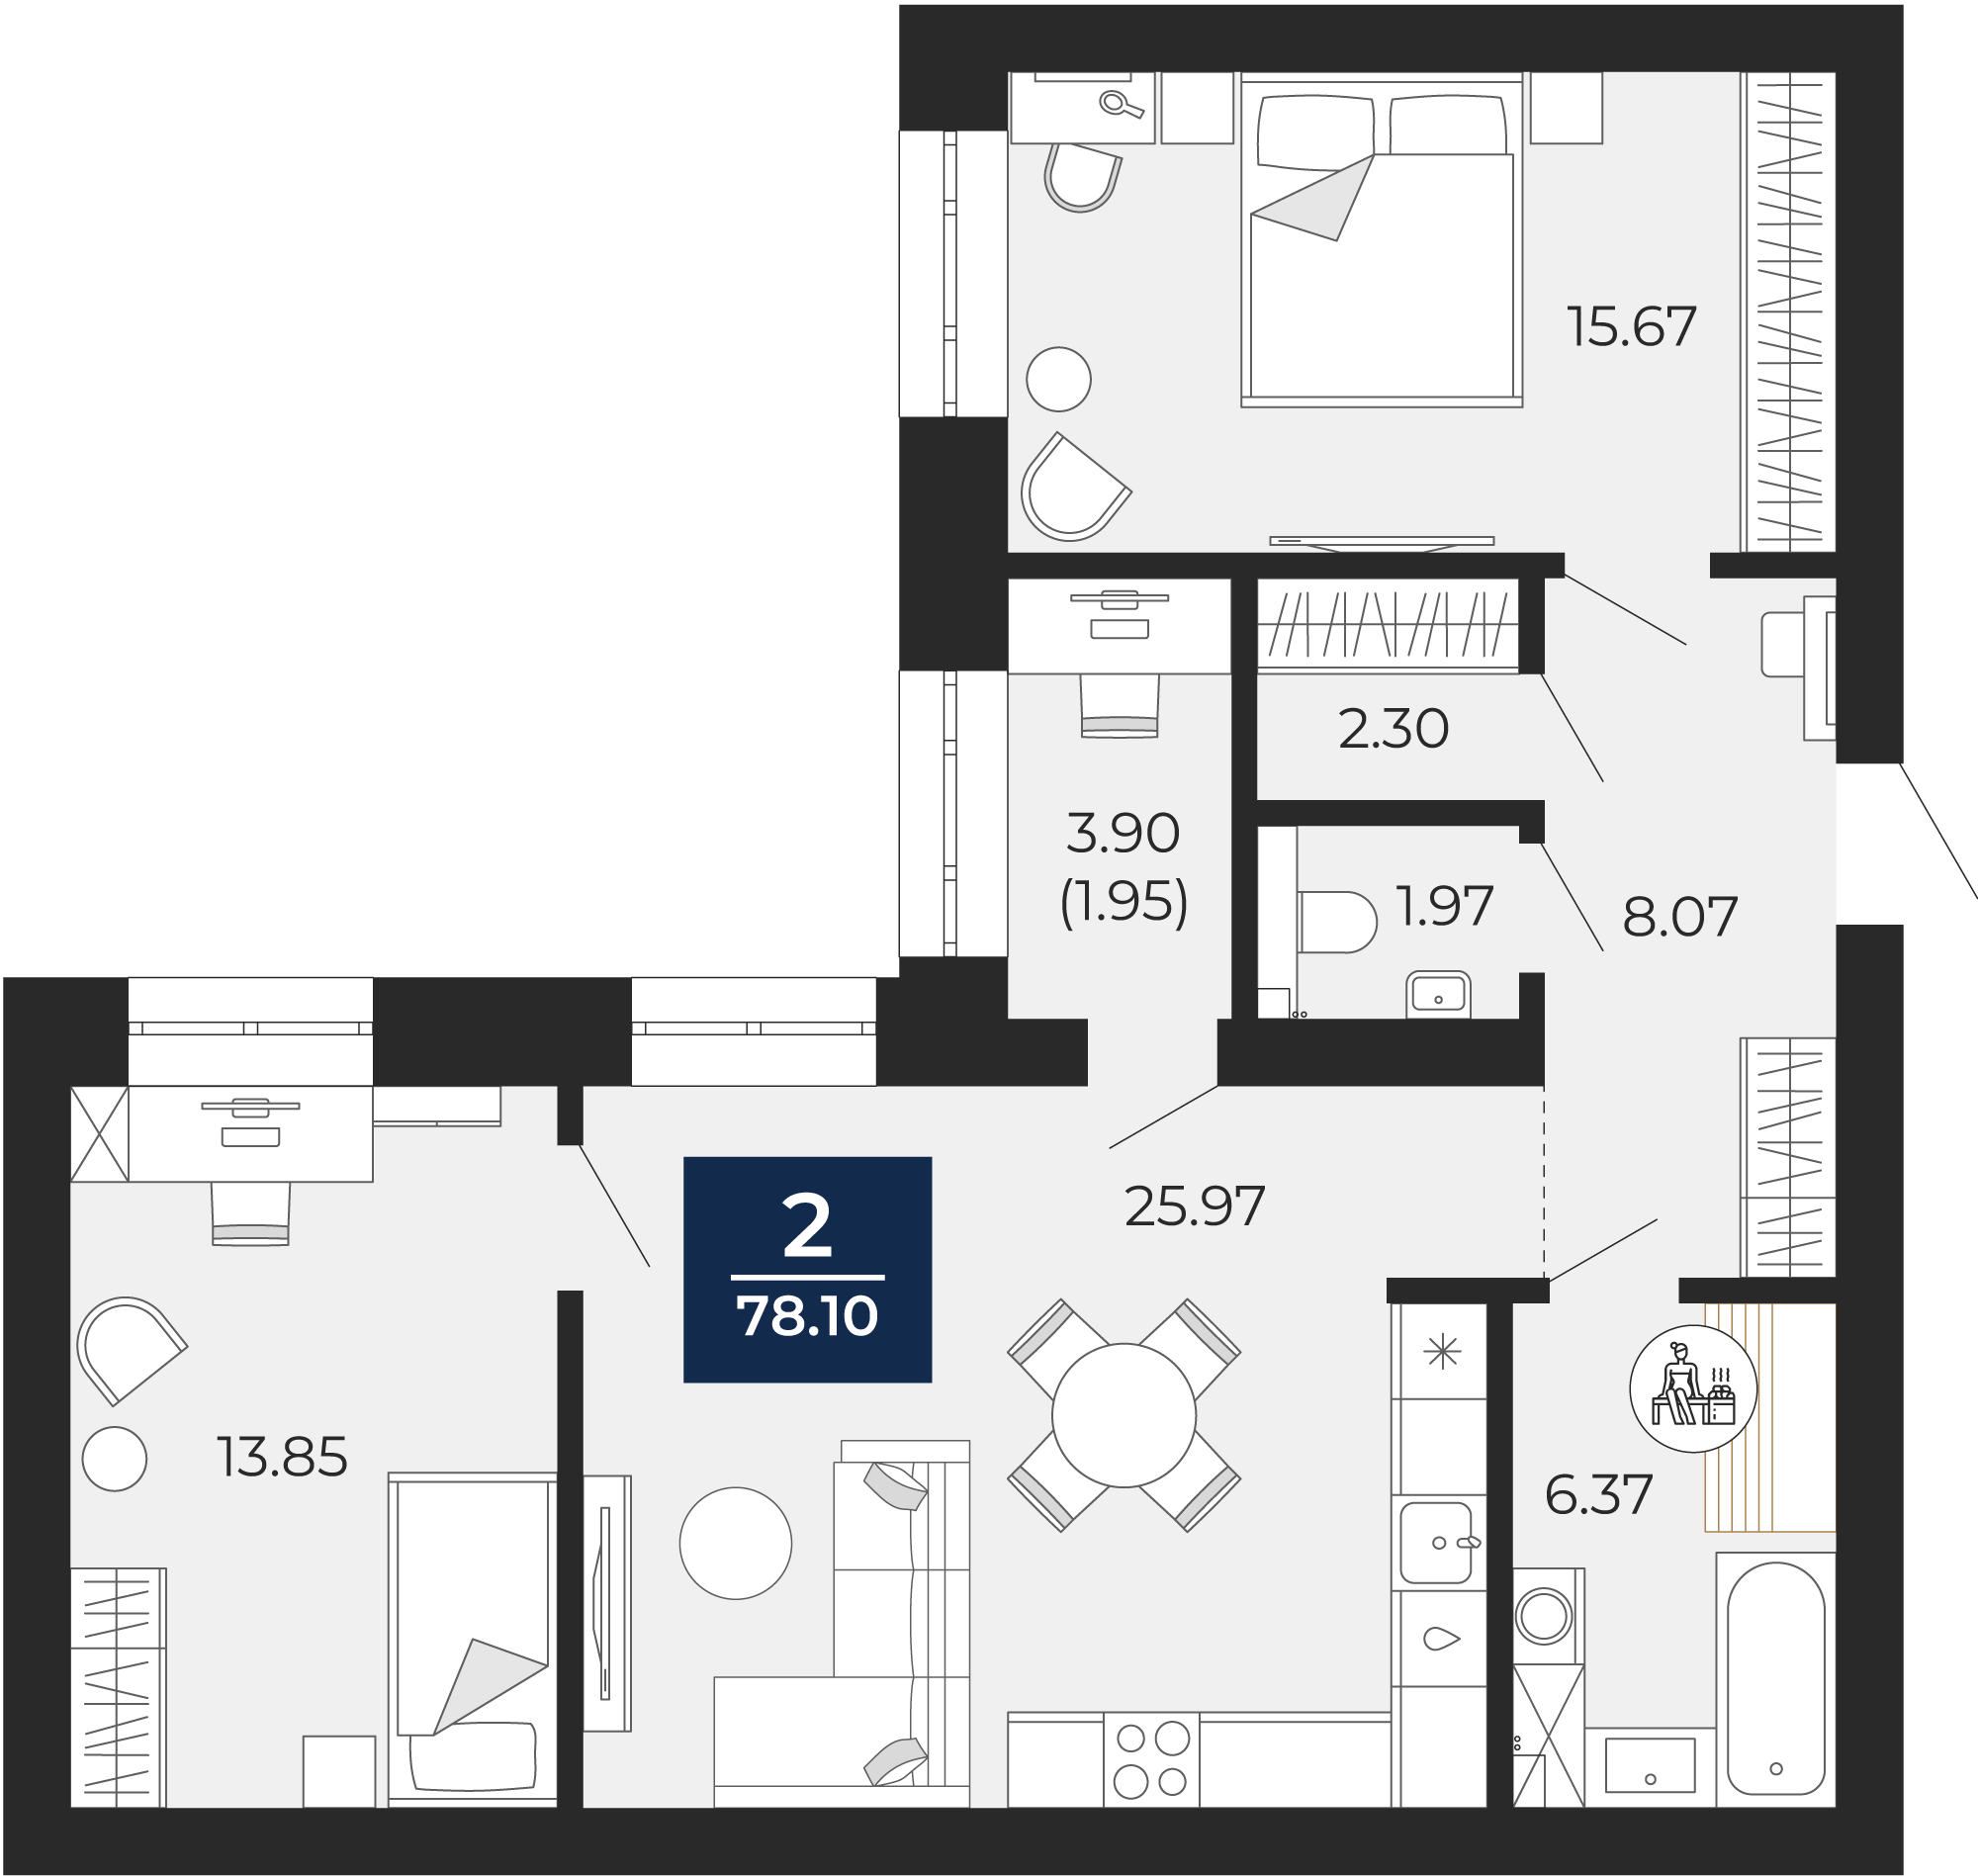 Квартира № 174, 2-комнатная, 78.1 кв. м, 9 этаж